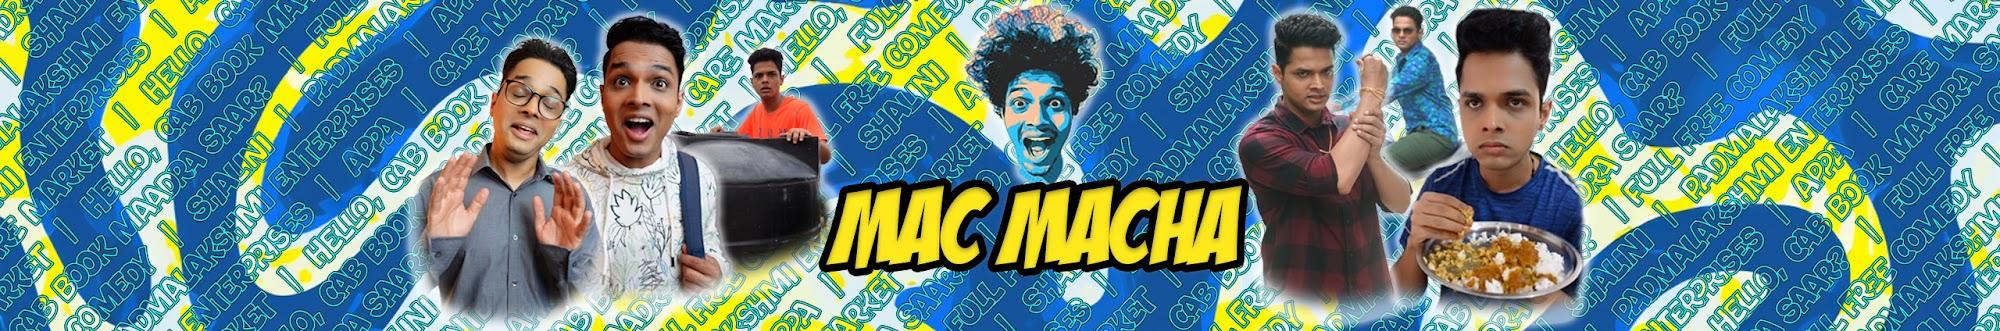 Mac Macha